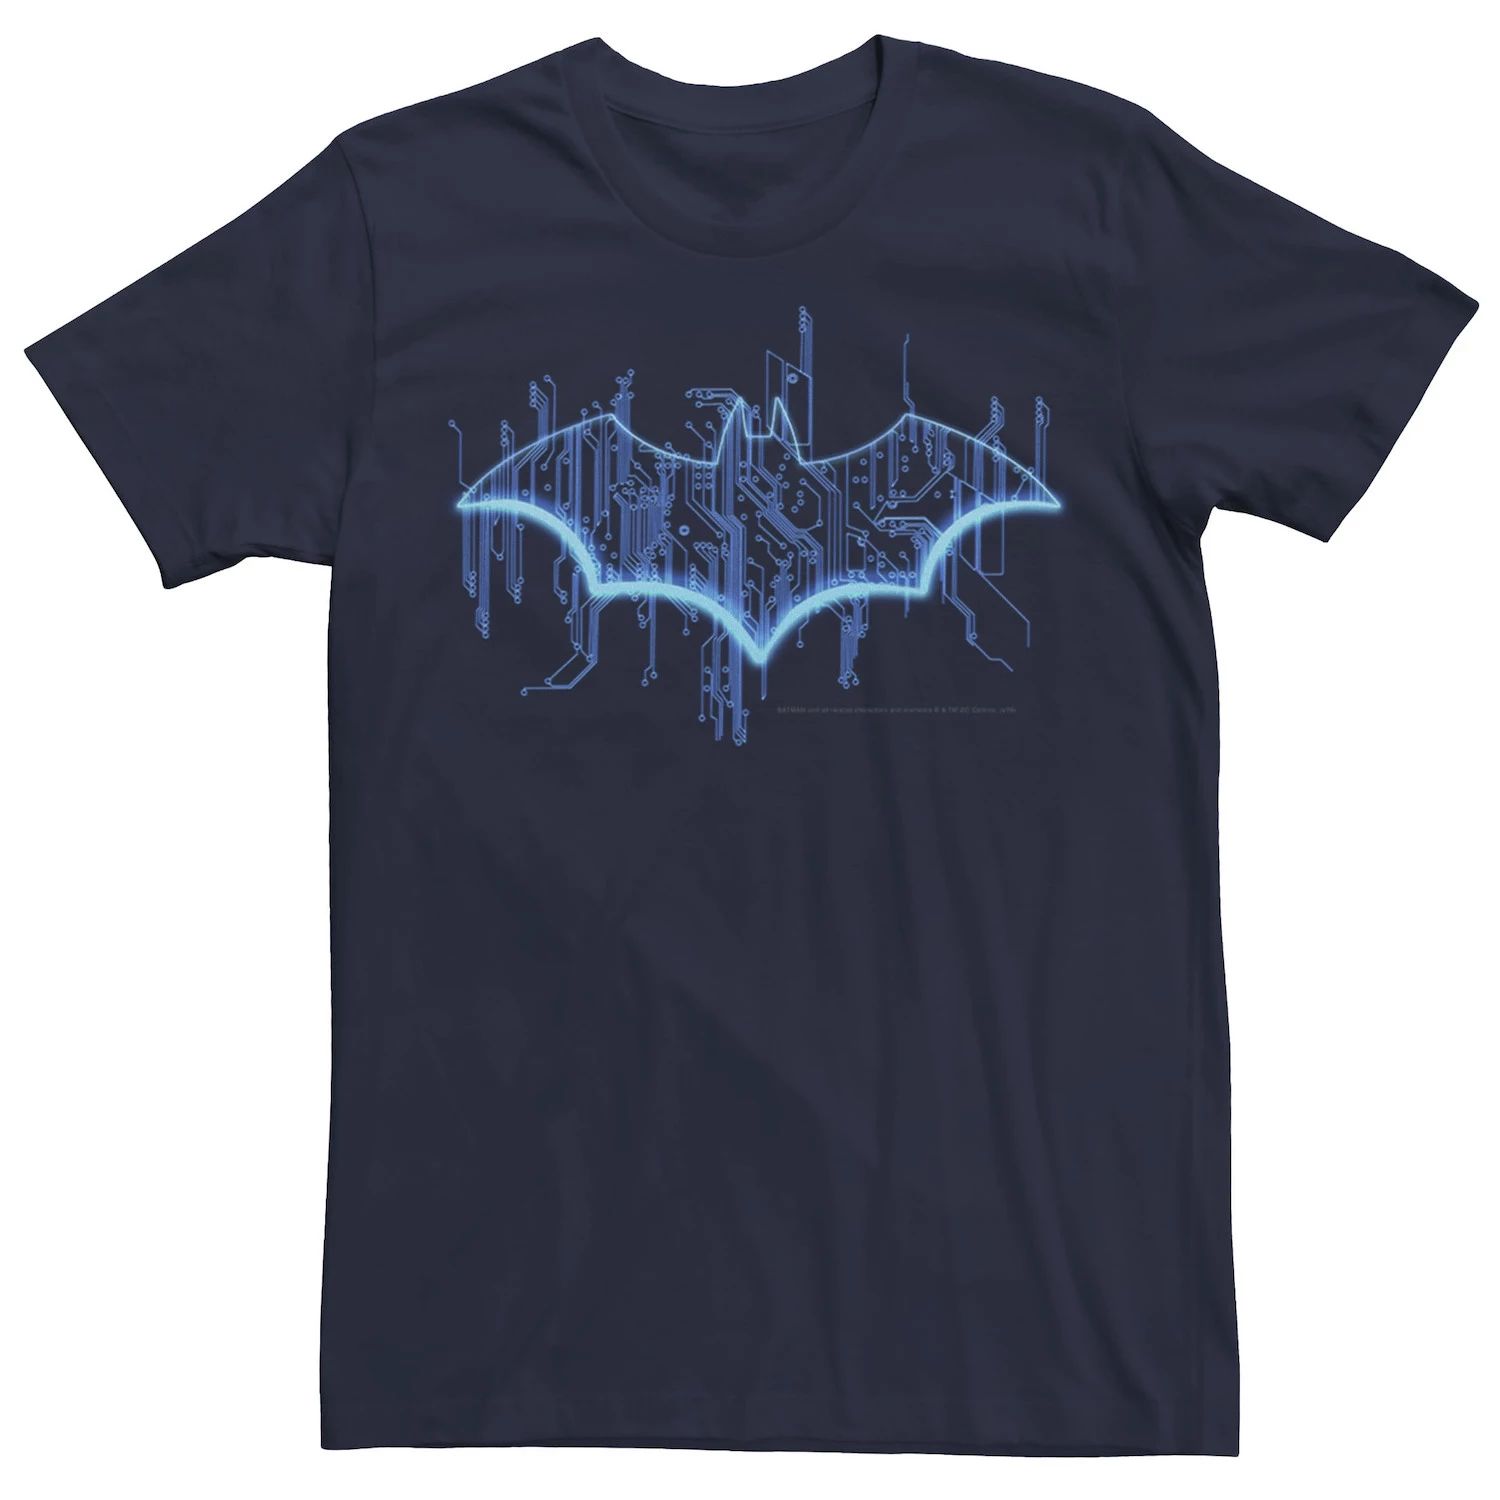 Мужская классическая футболка с логотипом Batman Digital, Синяя DC Comics, синий